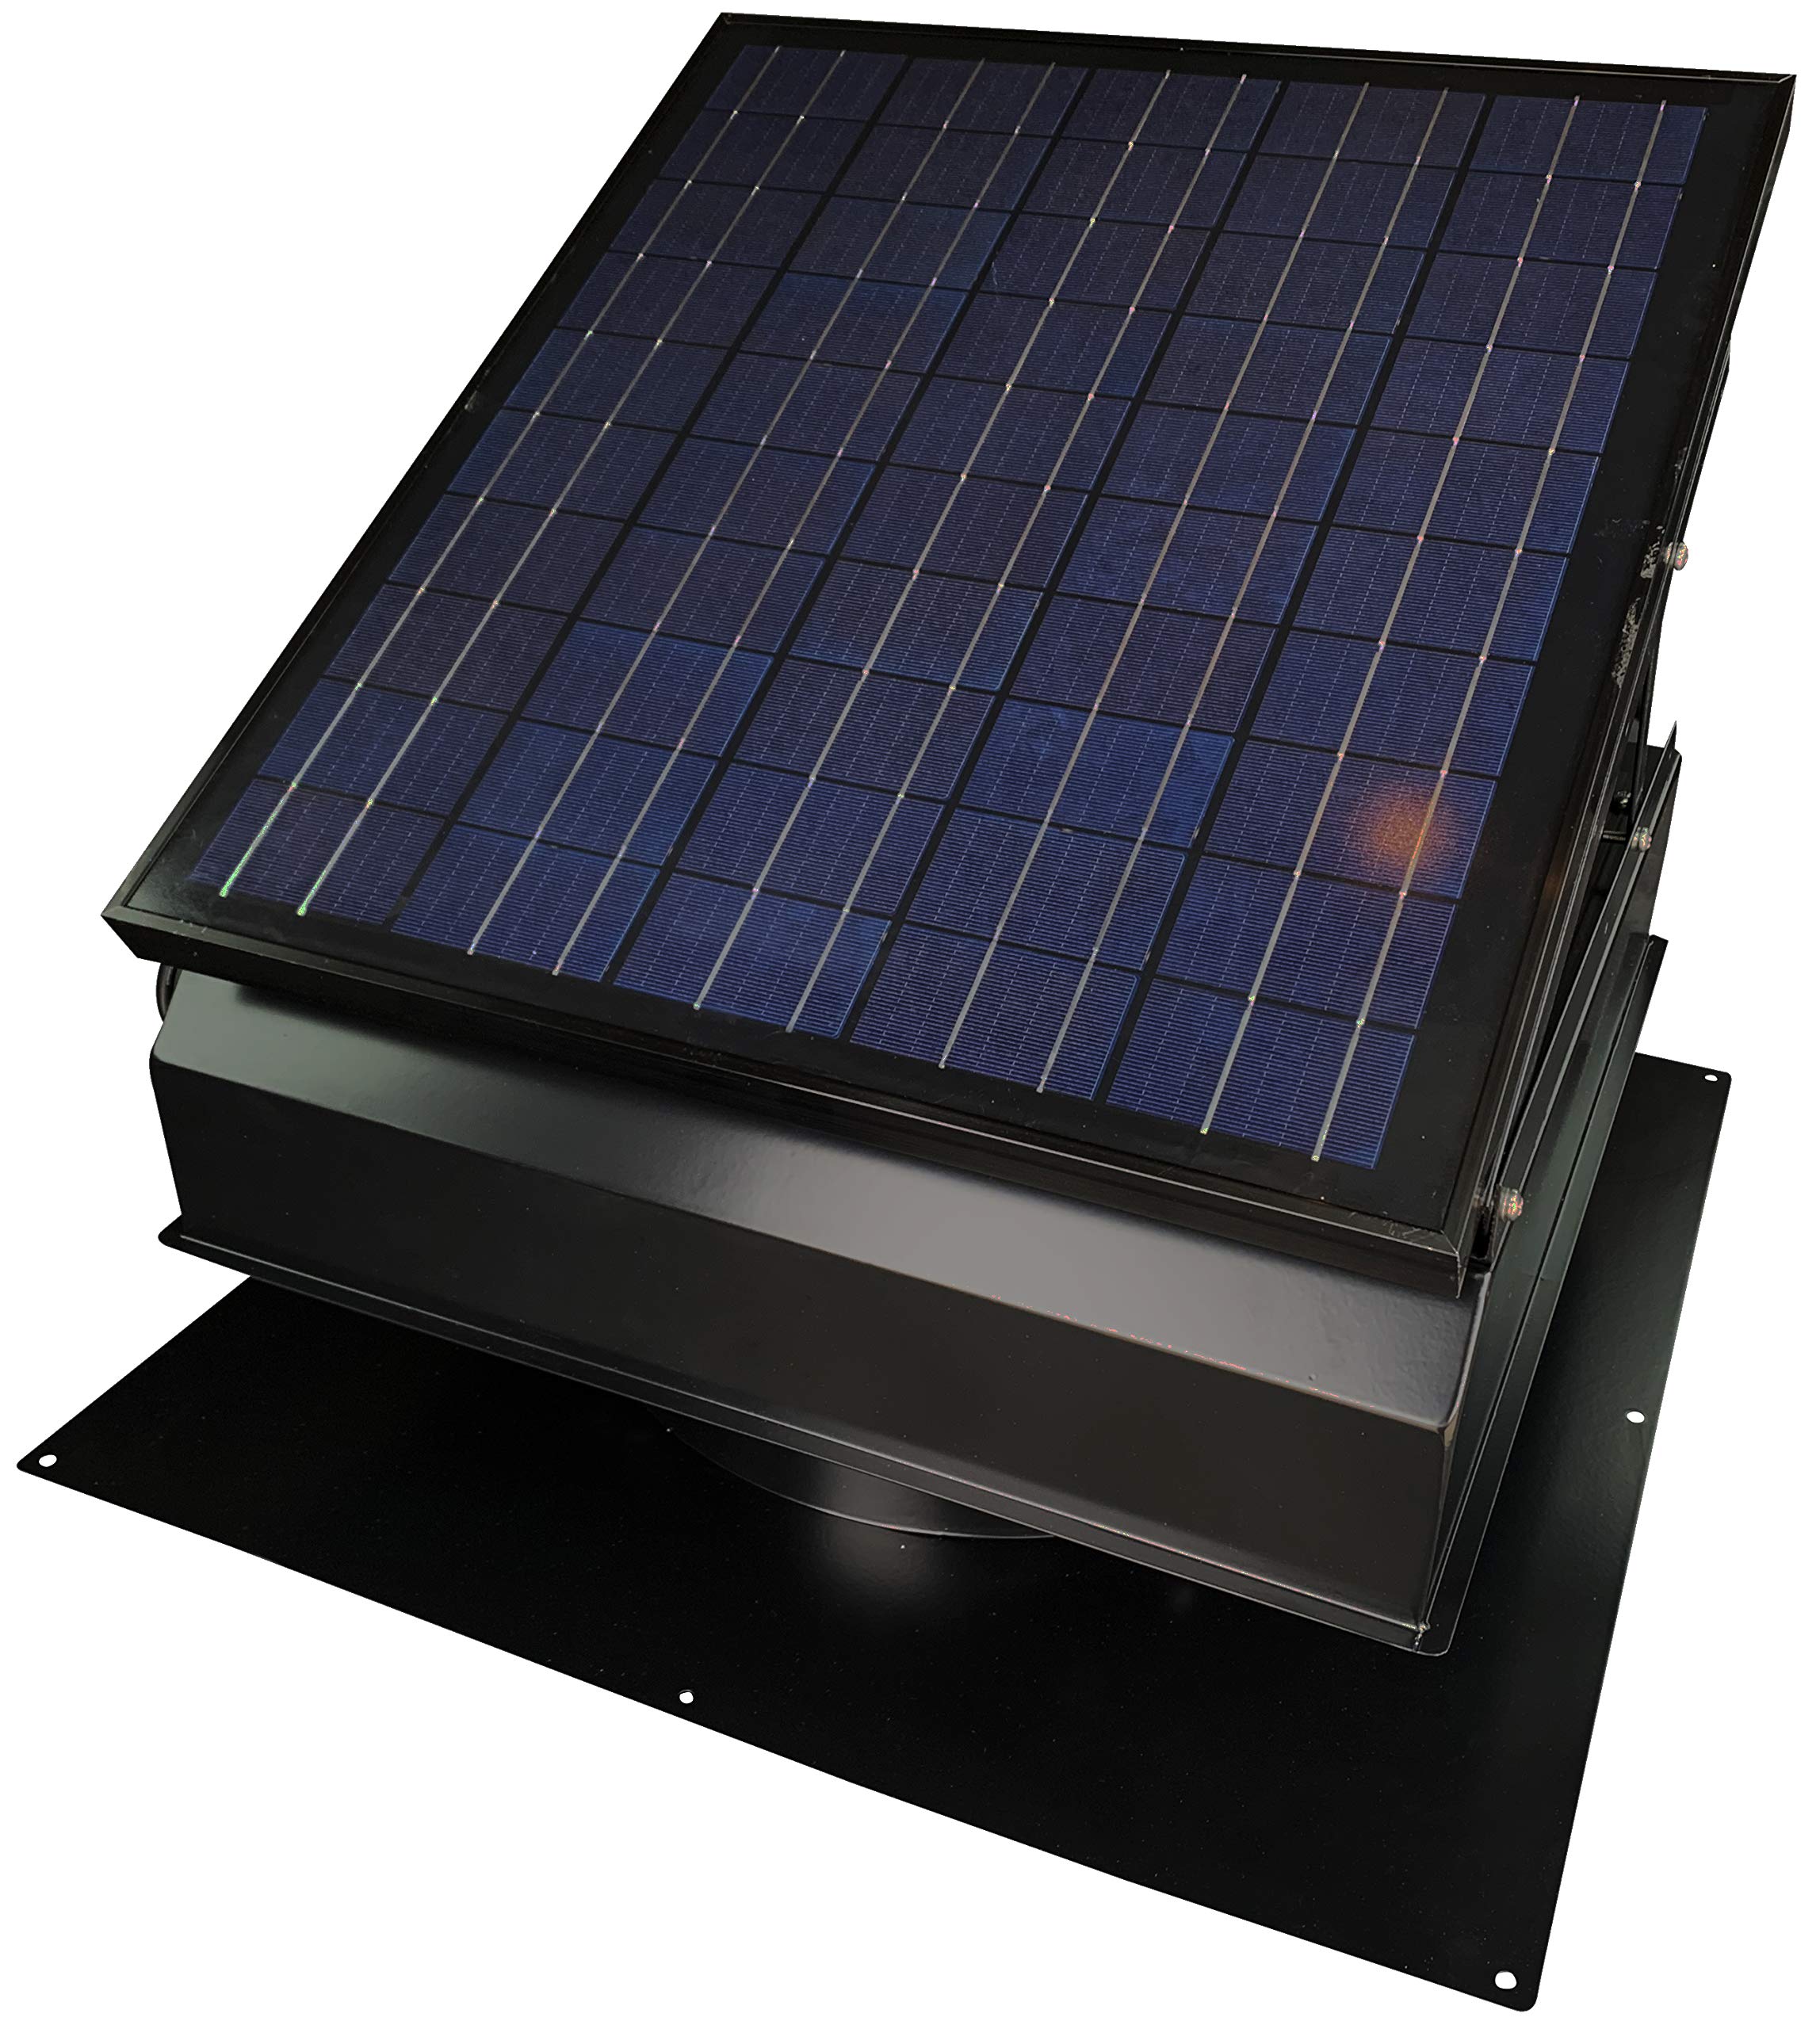 Remington Solar 40 Watt/ 38V Roof Mount Solar Attic Fan with 110V smart adapter